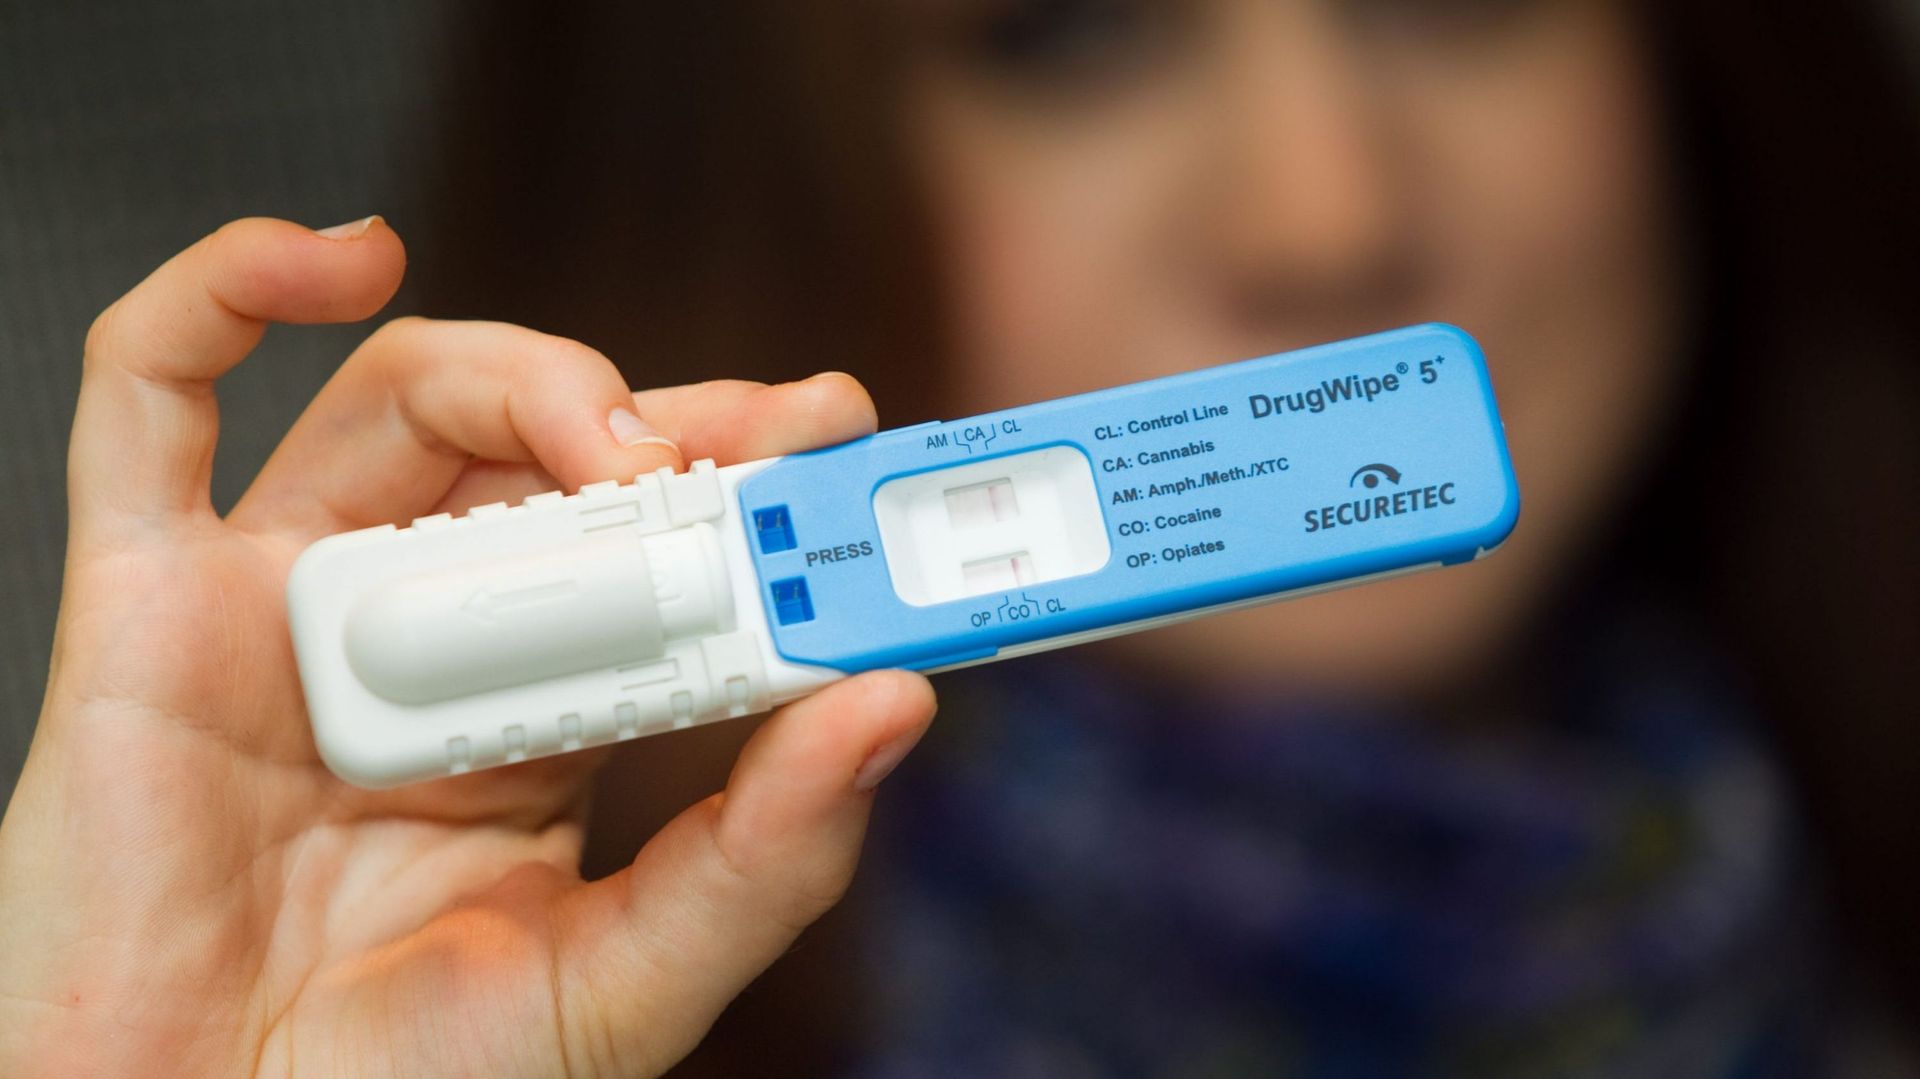 Conduite sous l'influence de drogue: les tests seront renforcés en 2017 